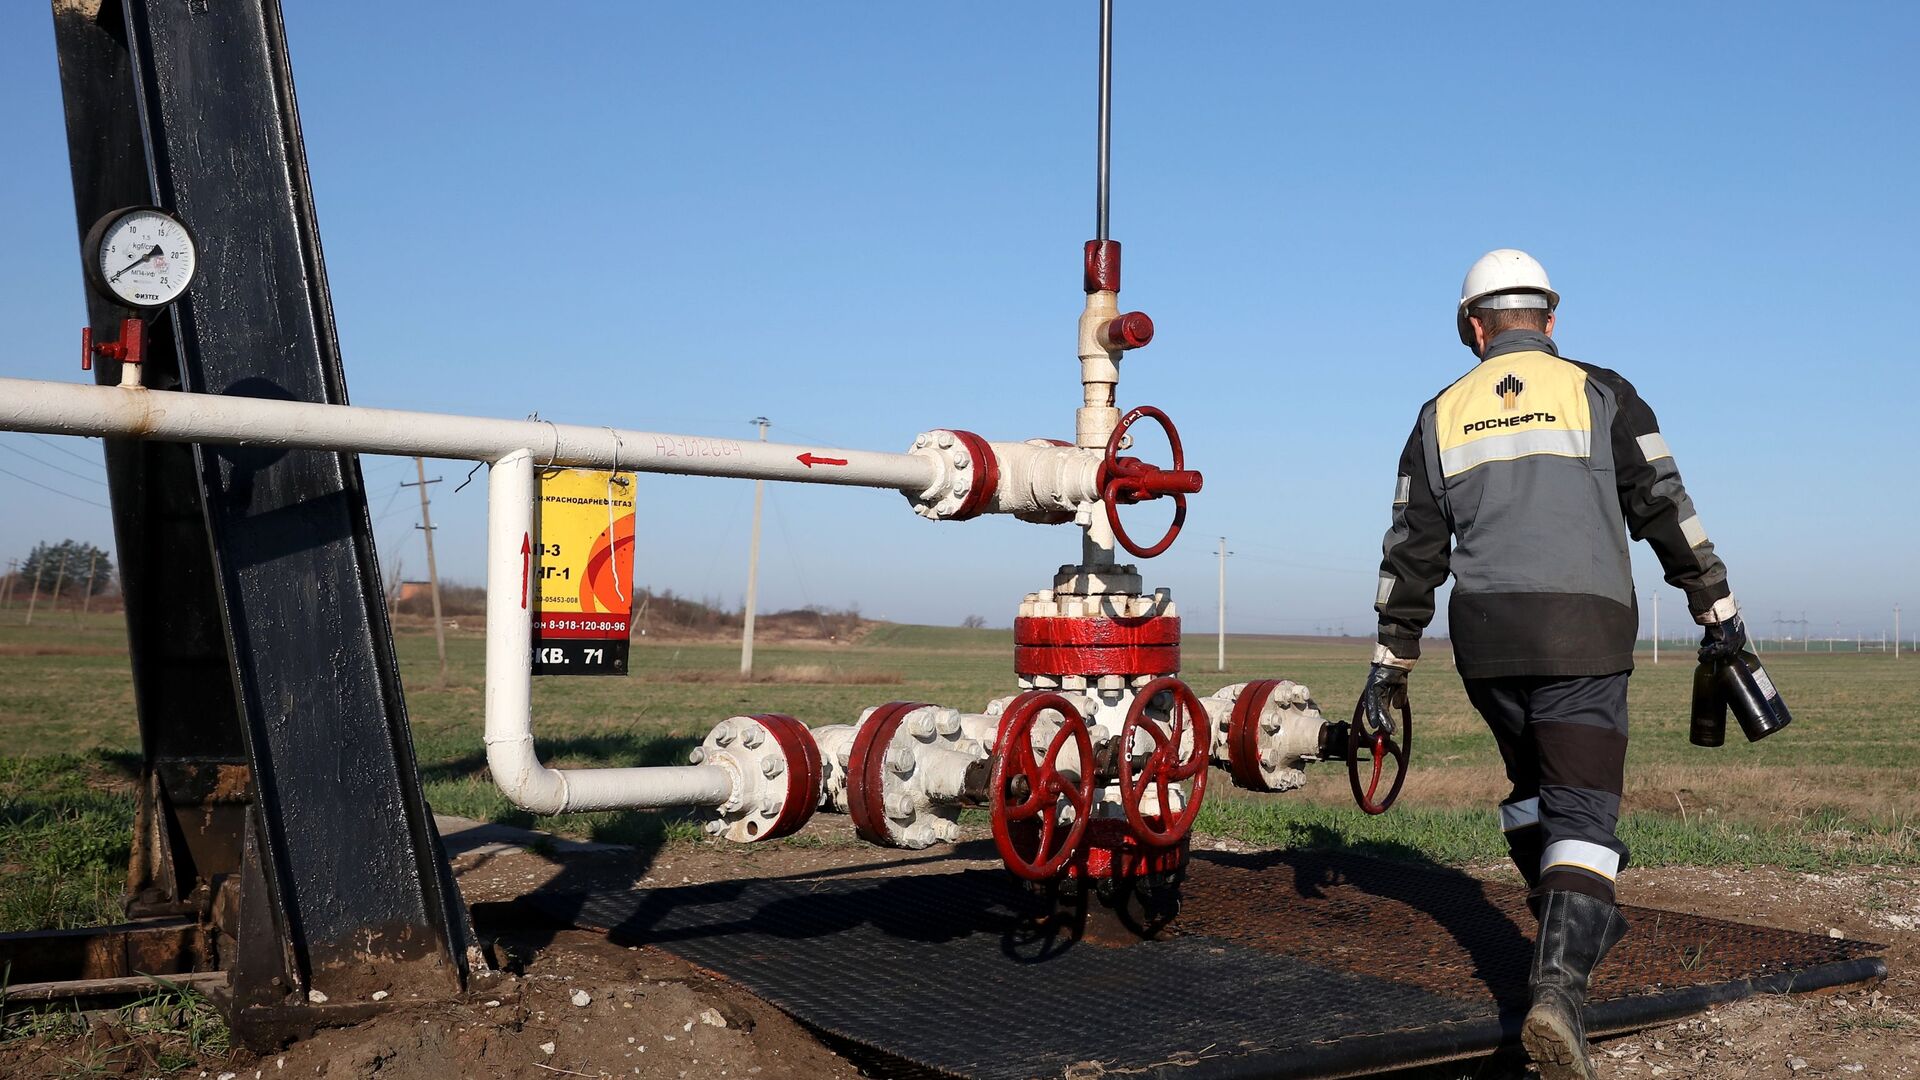 Сотрудник Роснефти осматривает оборудование на Абино-Украинском нефтегазовом месторождении в Краснодарском крае - Sputnik Азербайджан, 1920, 15.05.2021